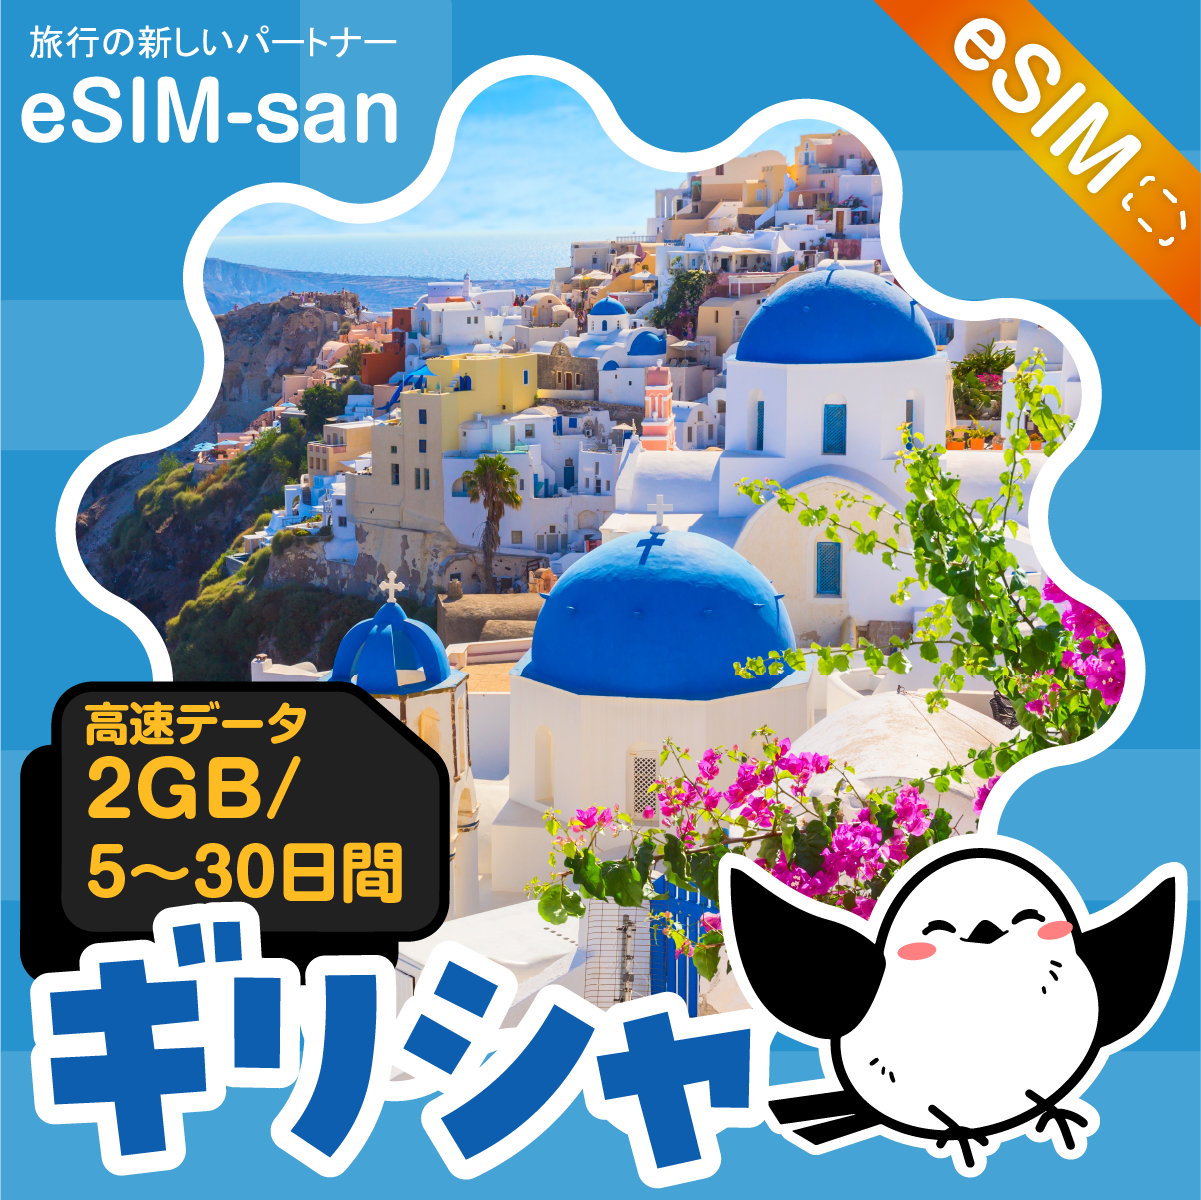 ギリシャeSIMの2GB/dayプラン画像_eSIM-san